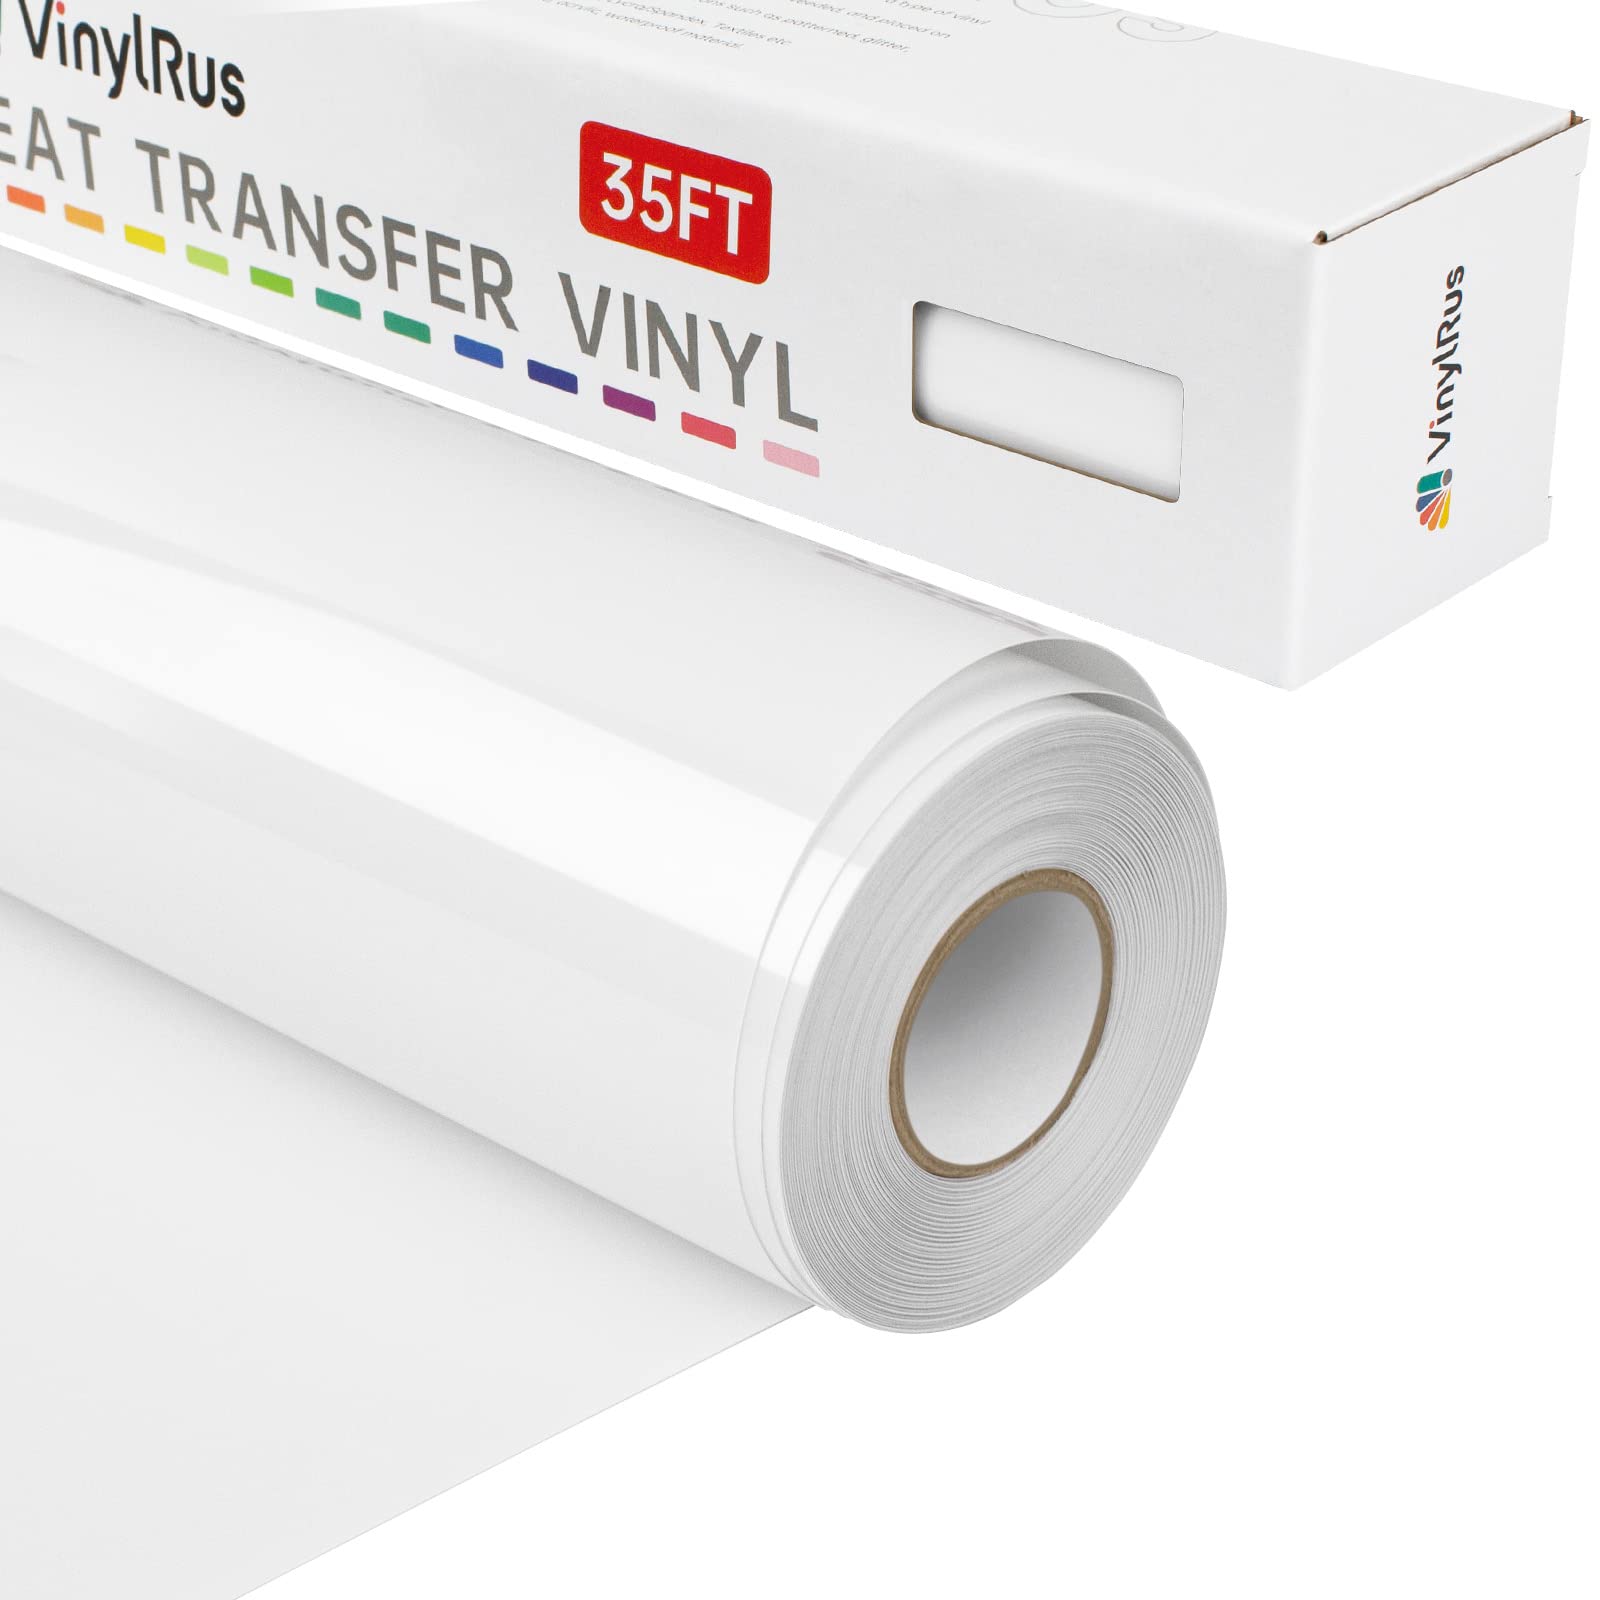 White Heat Transfer Vinyl HTV Roll 12 x 50FT - White Iron on Vinyl Roll  for Cricut & Silhouette - Easy to Cut & Weed White HTV Vinyl Roll